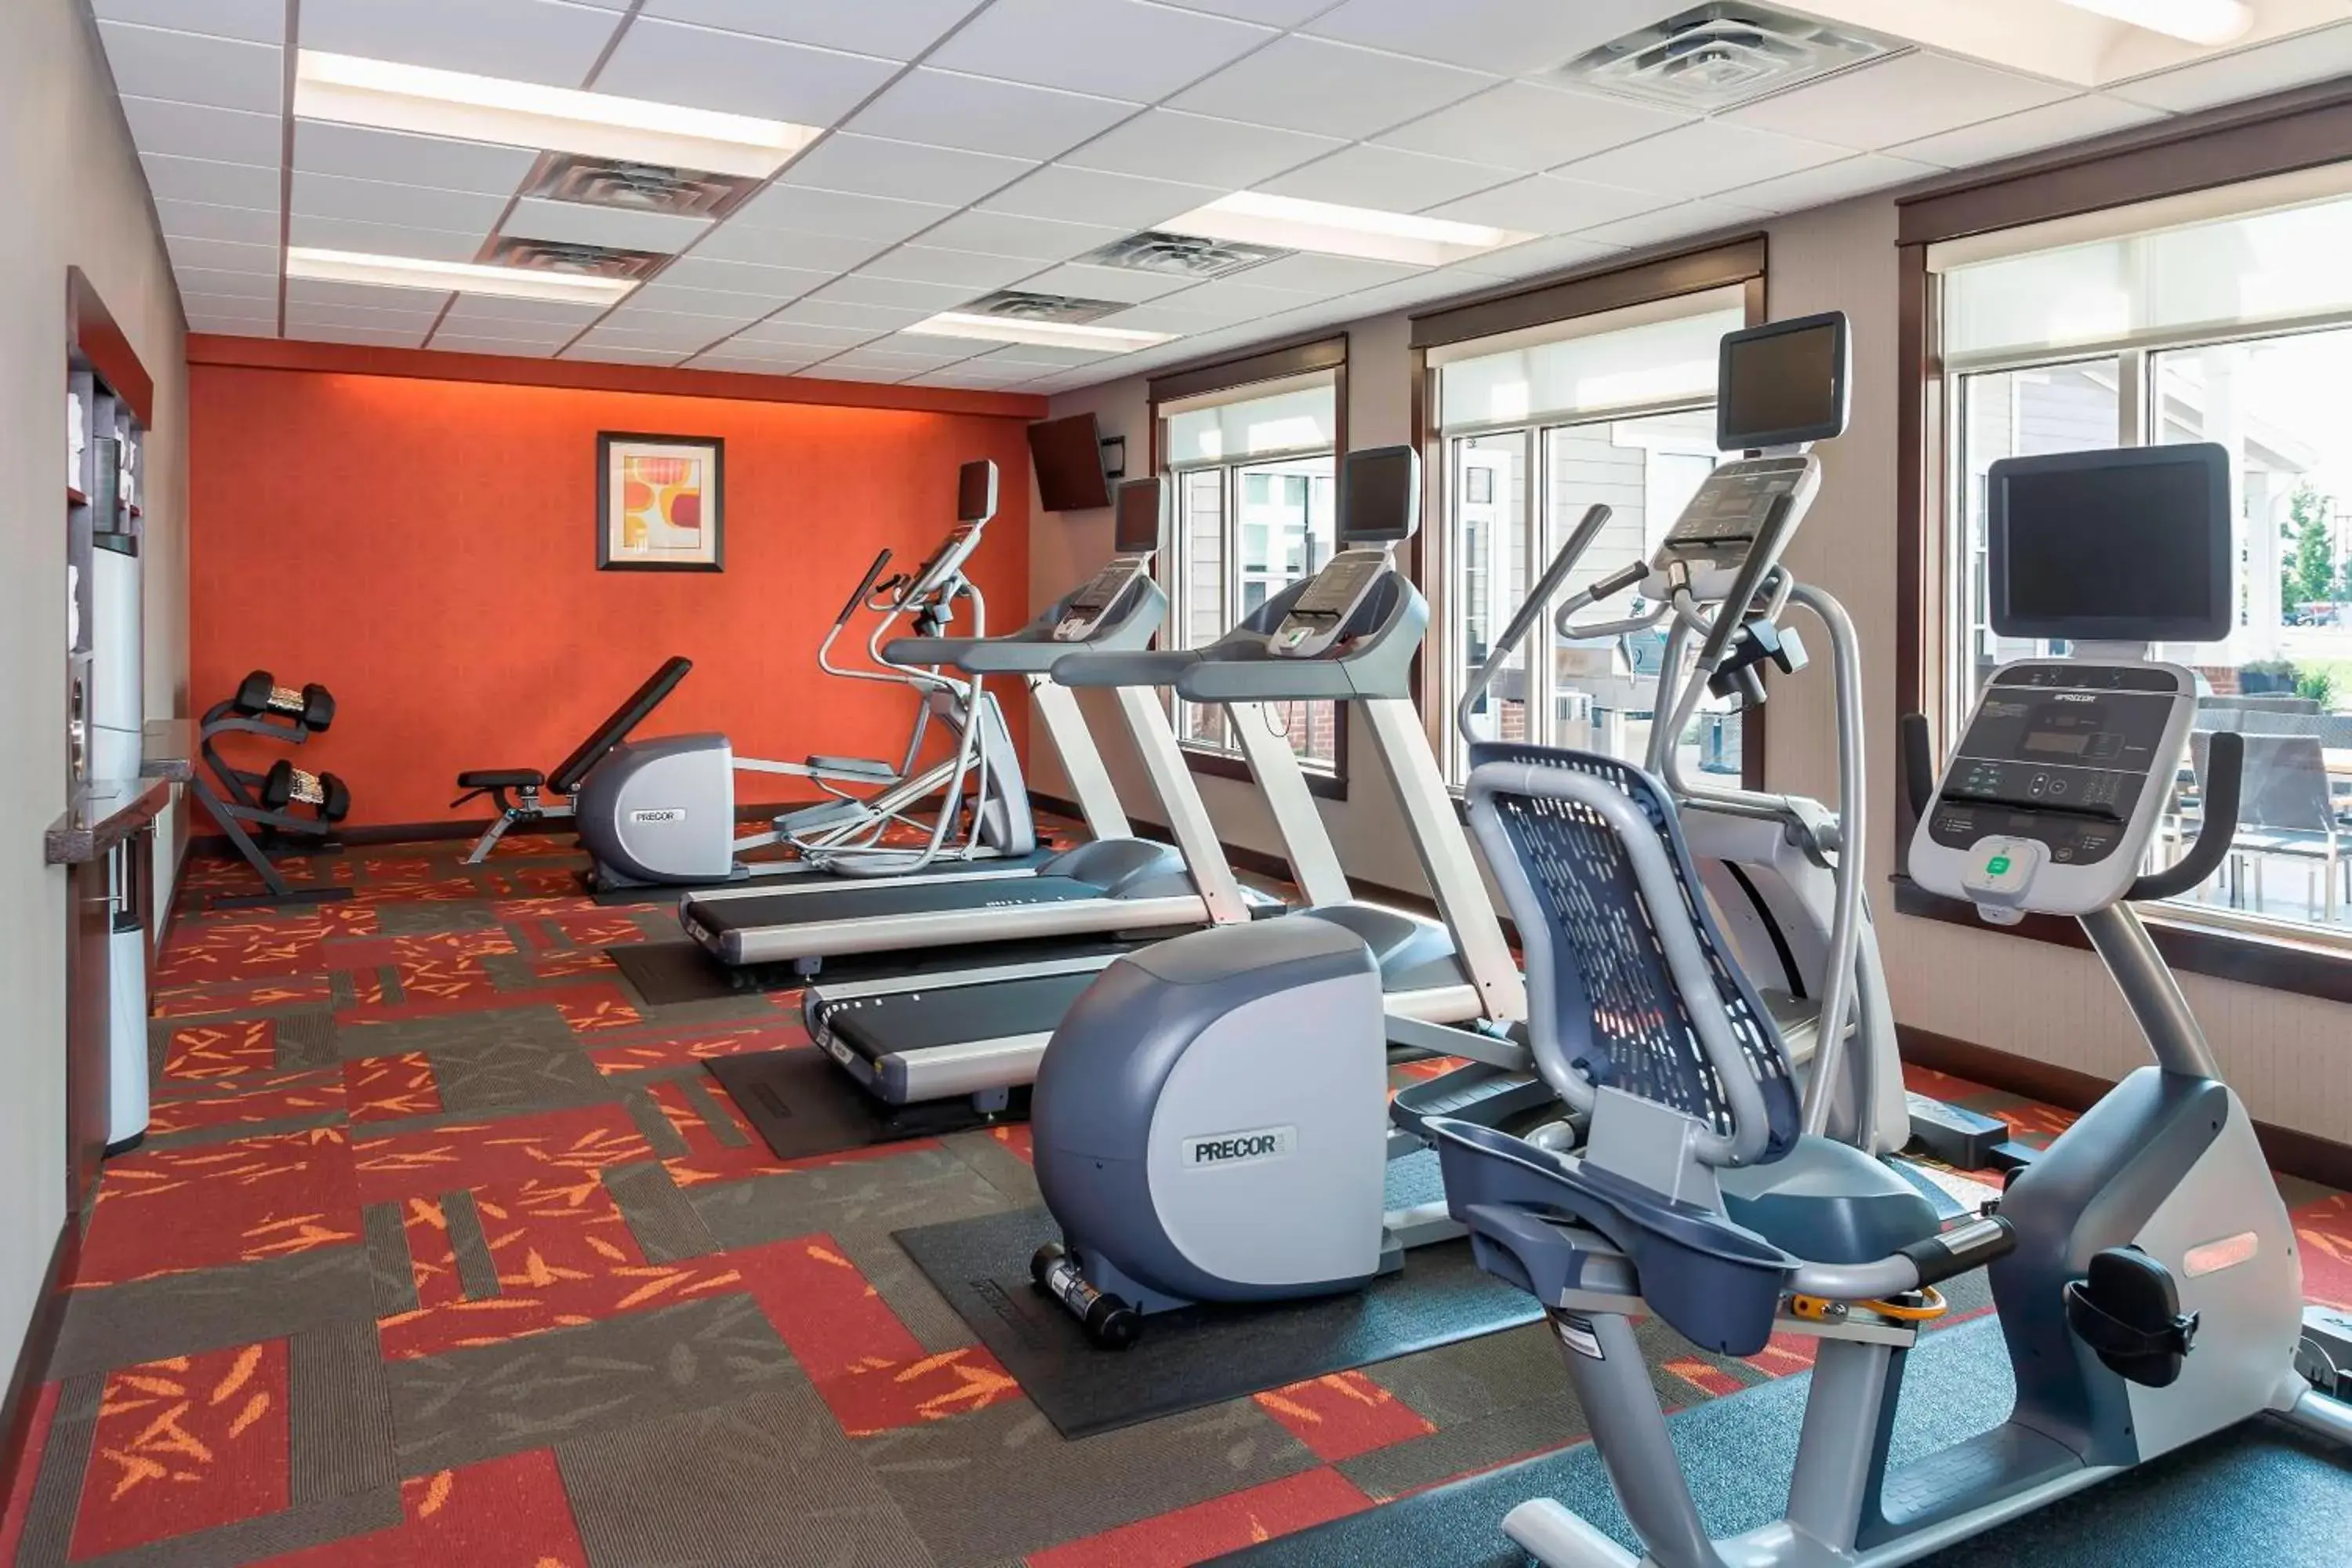 Fitness centre/facilities, Fitness Center/Facilities in Residence Inn by Marriott Fargo